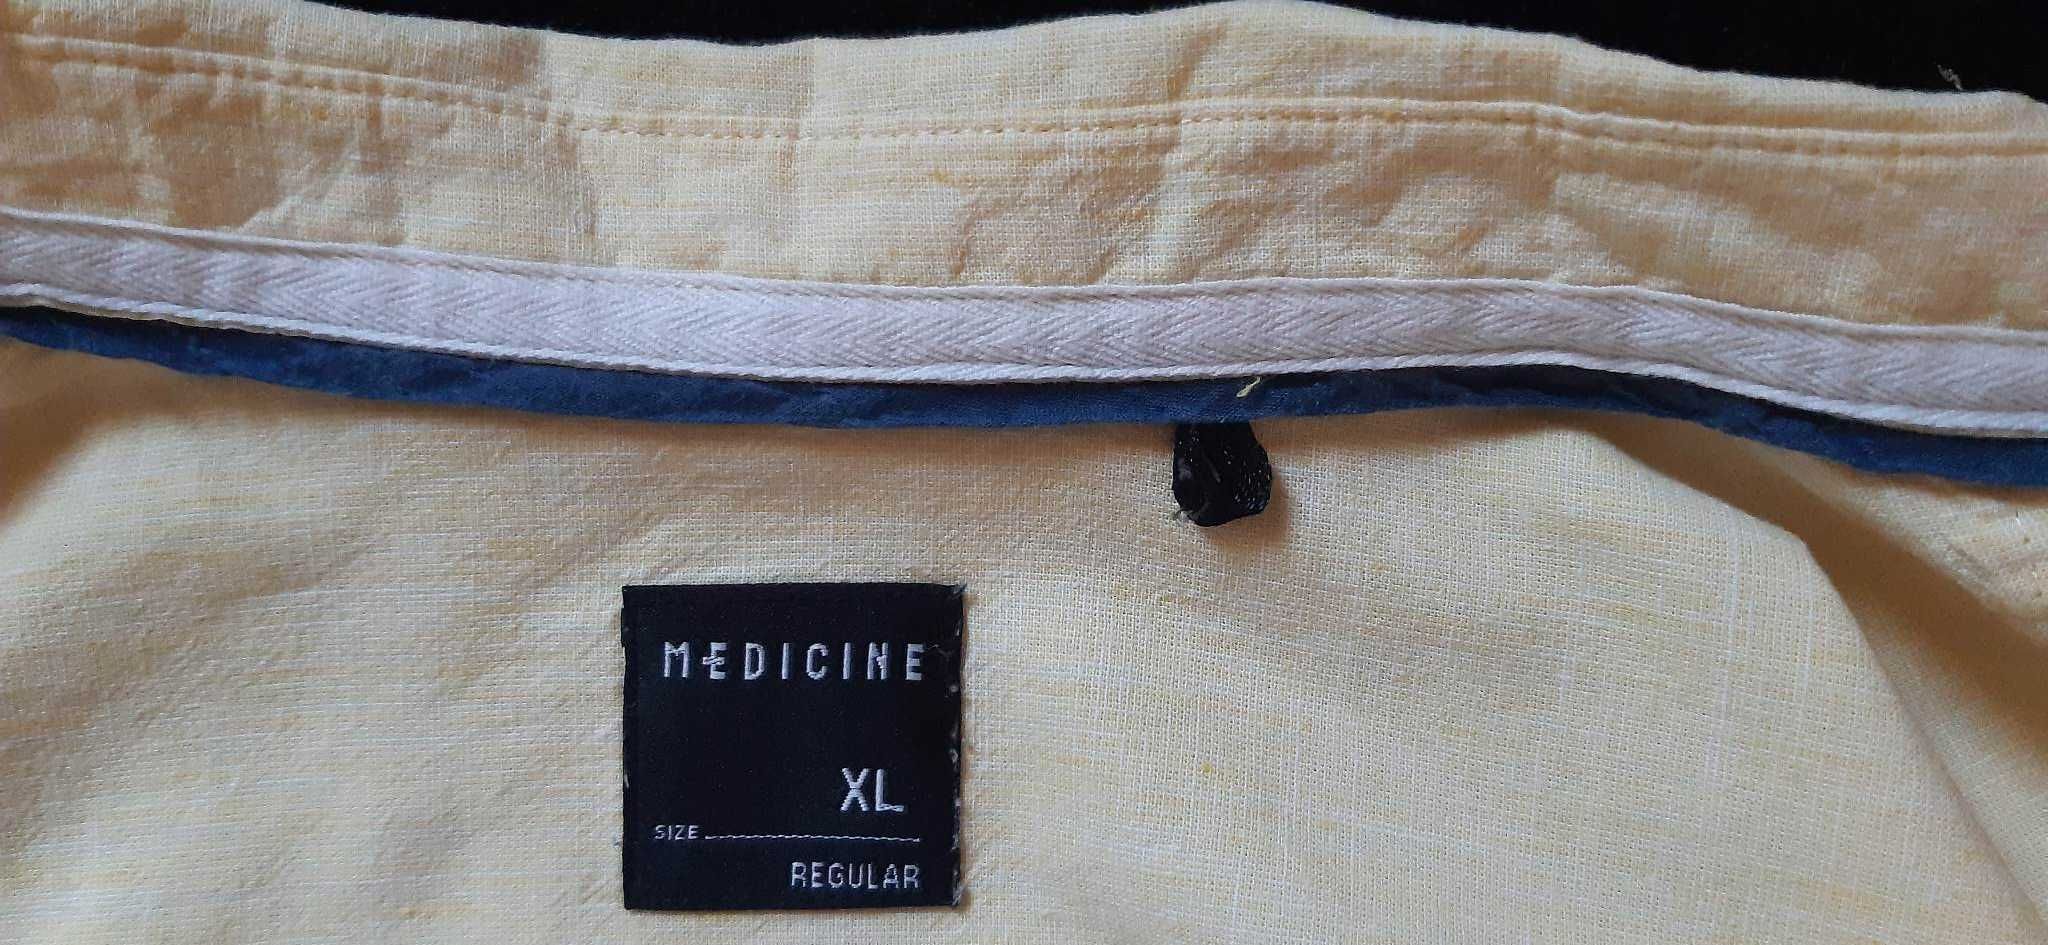 Koszula męska XL 45 Medicine